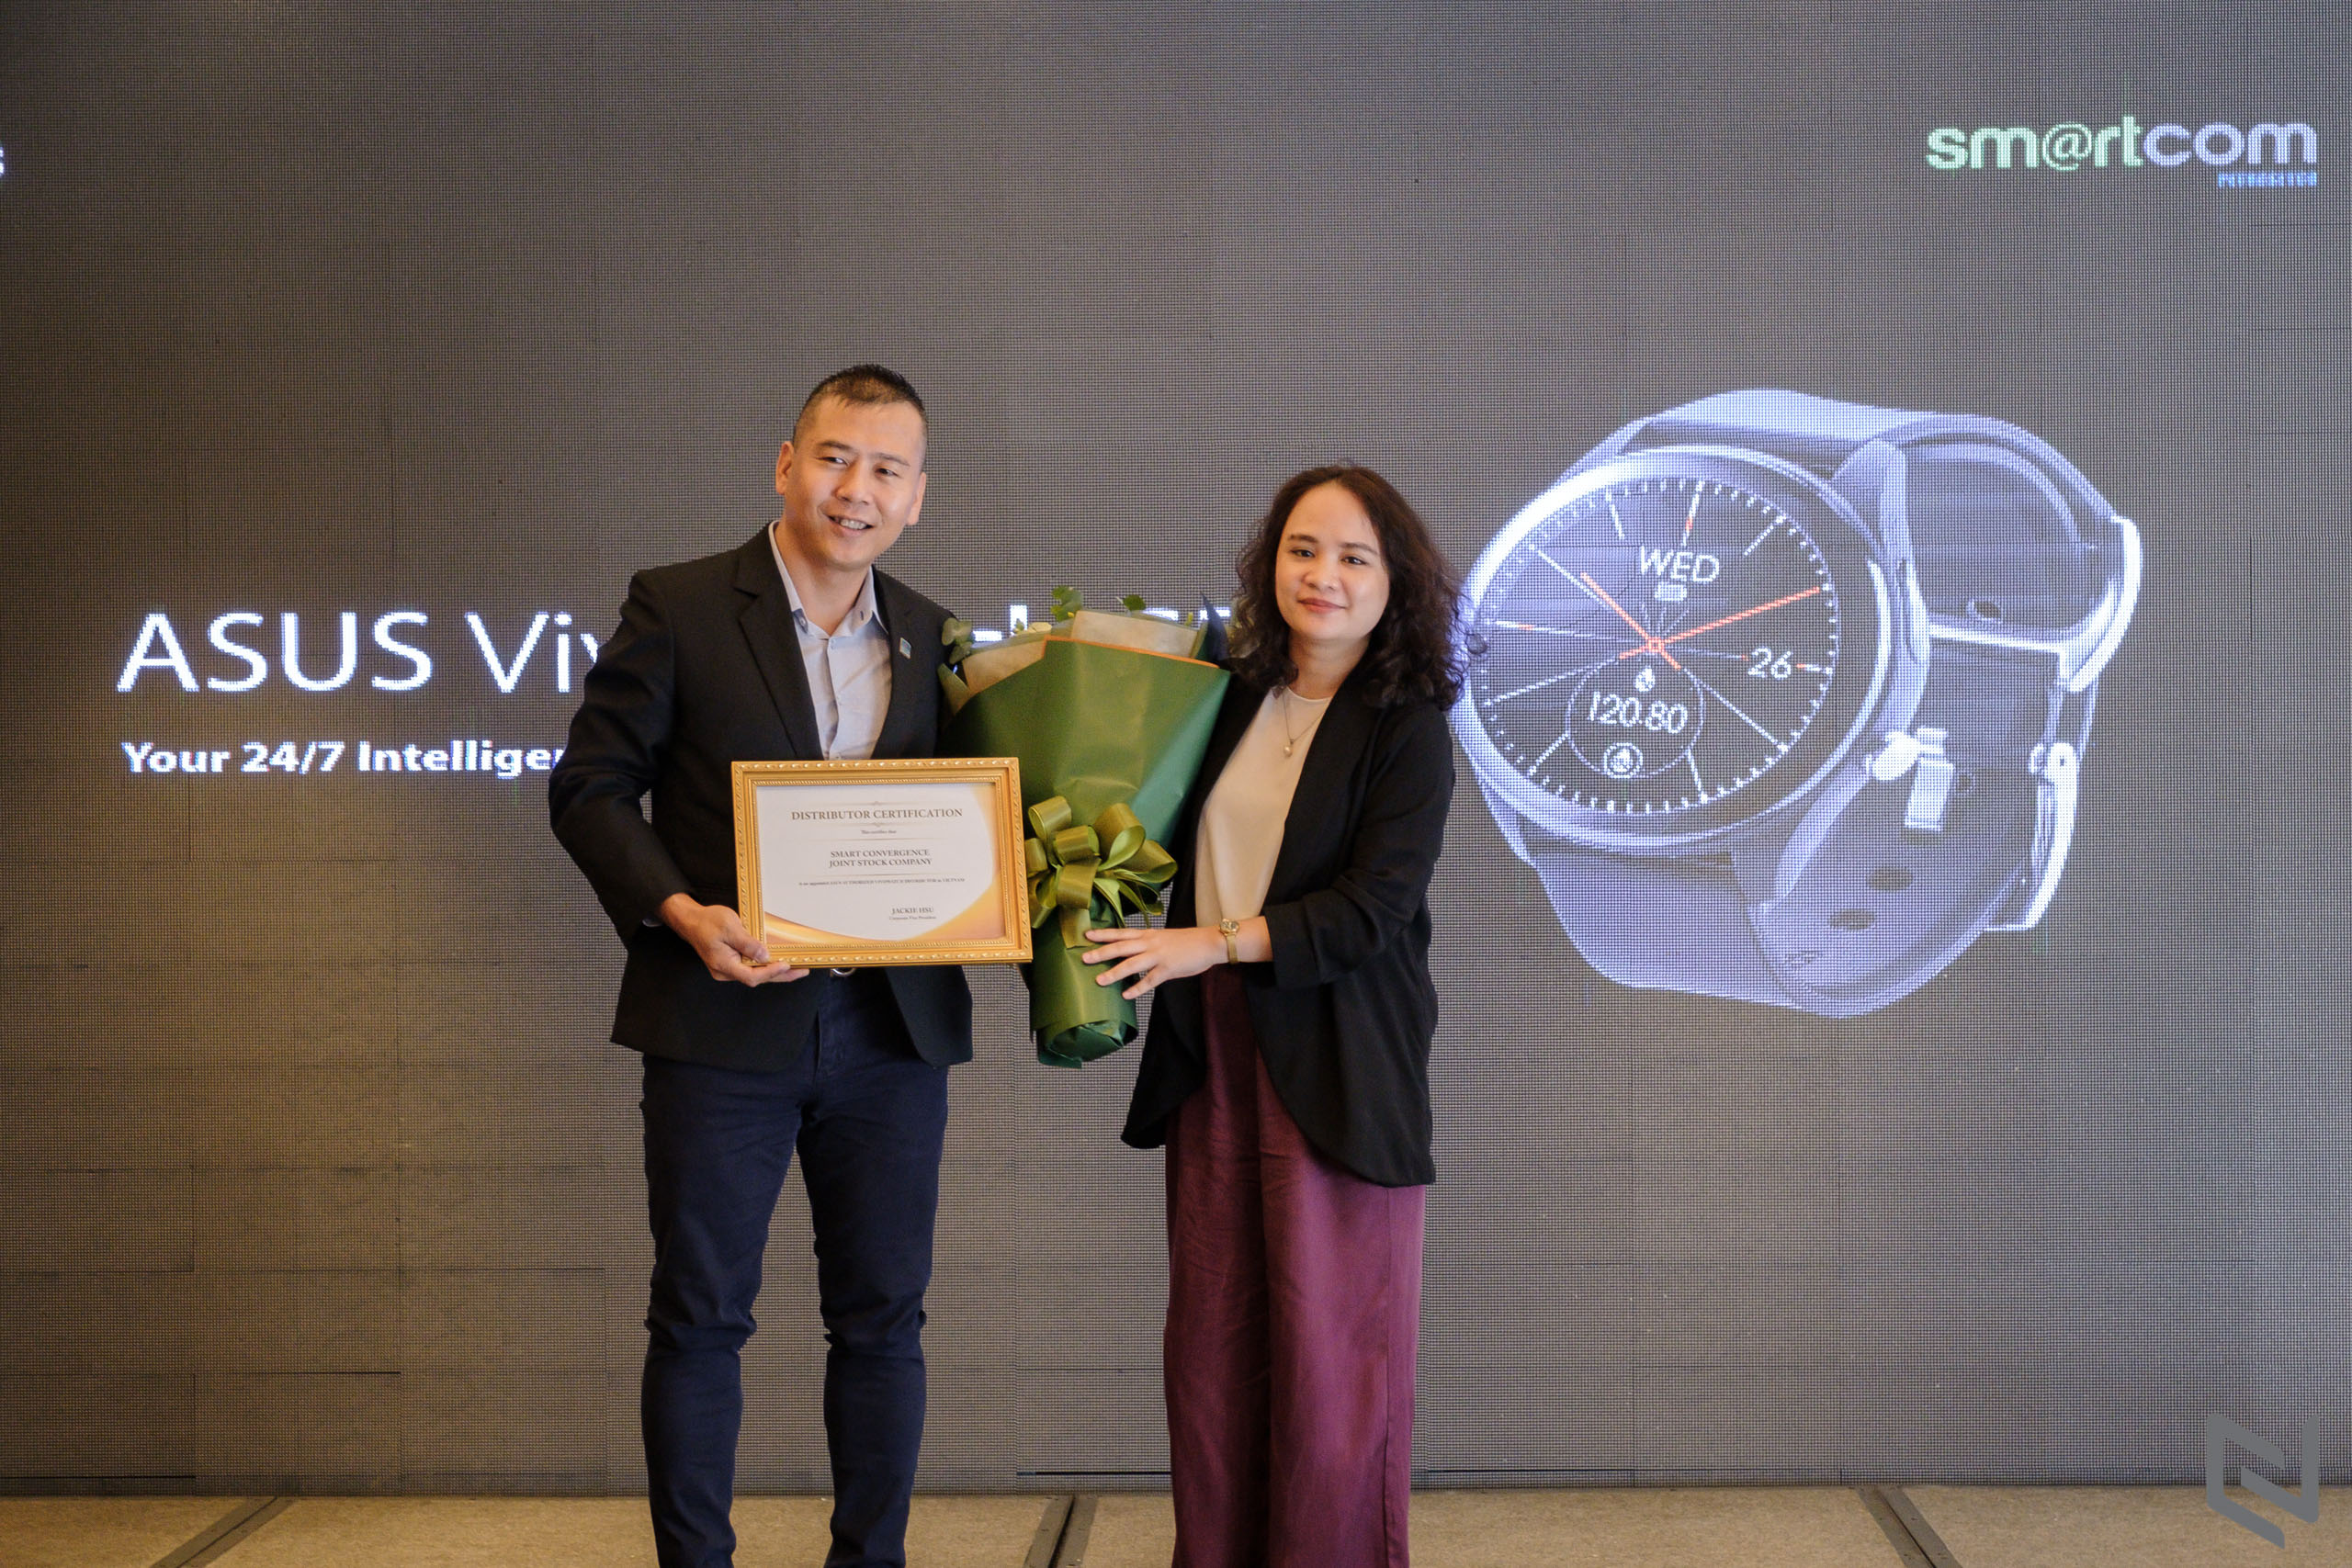 ASUS ra mắt đồng hồ thông minh VivoWatch SP và giới thiệu nhà phân phối Smartcom